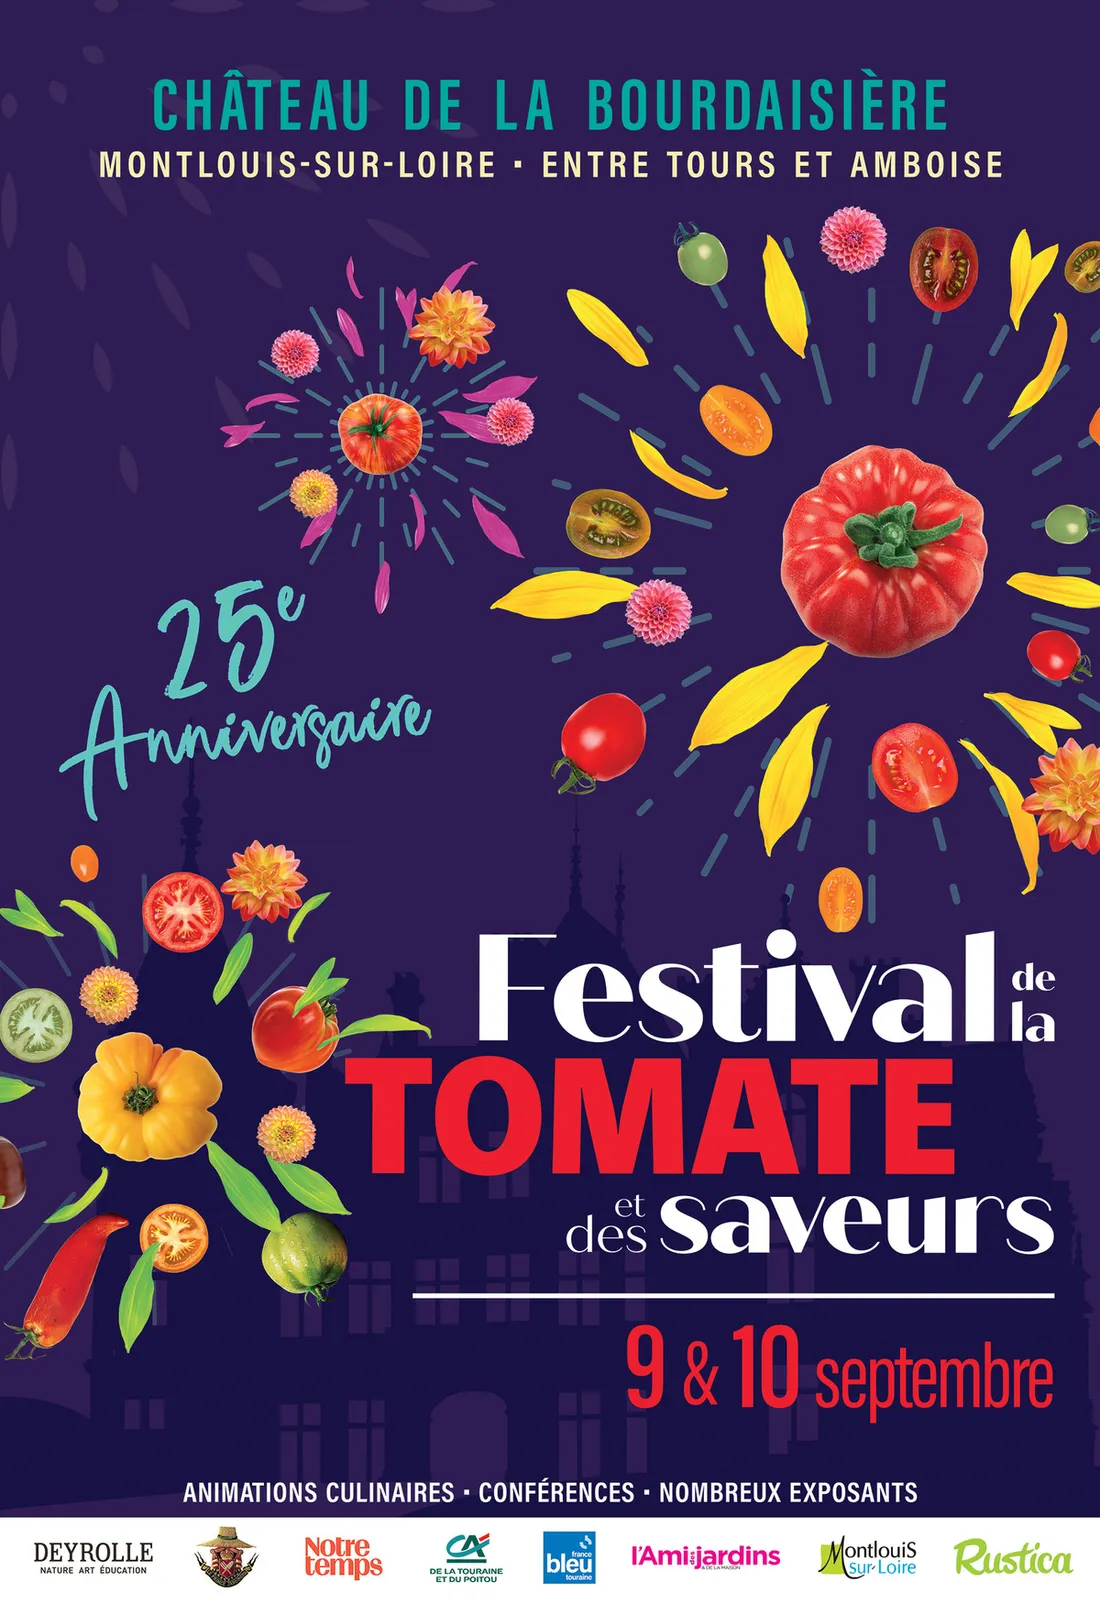 Le Festival de la Tomate et des Saveurs à la Bourdaisière fête ses 25 ans ! 